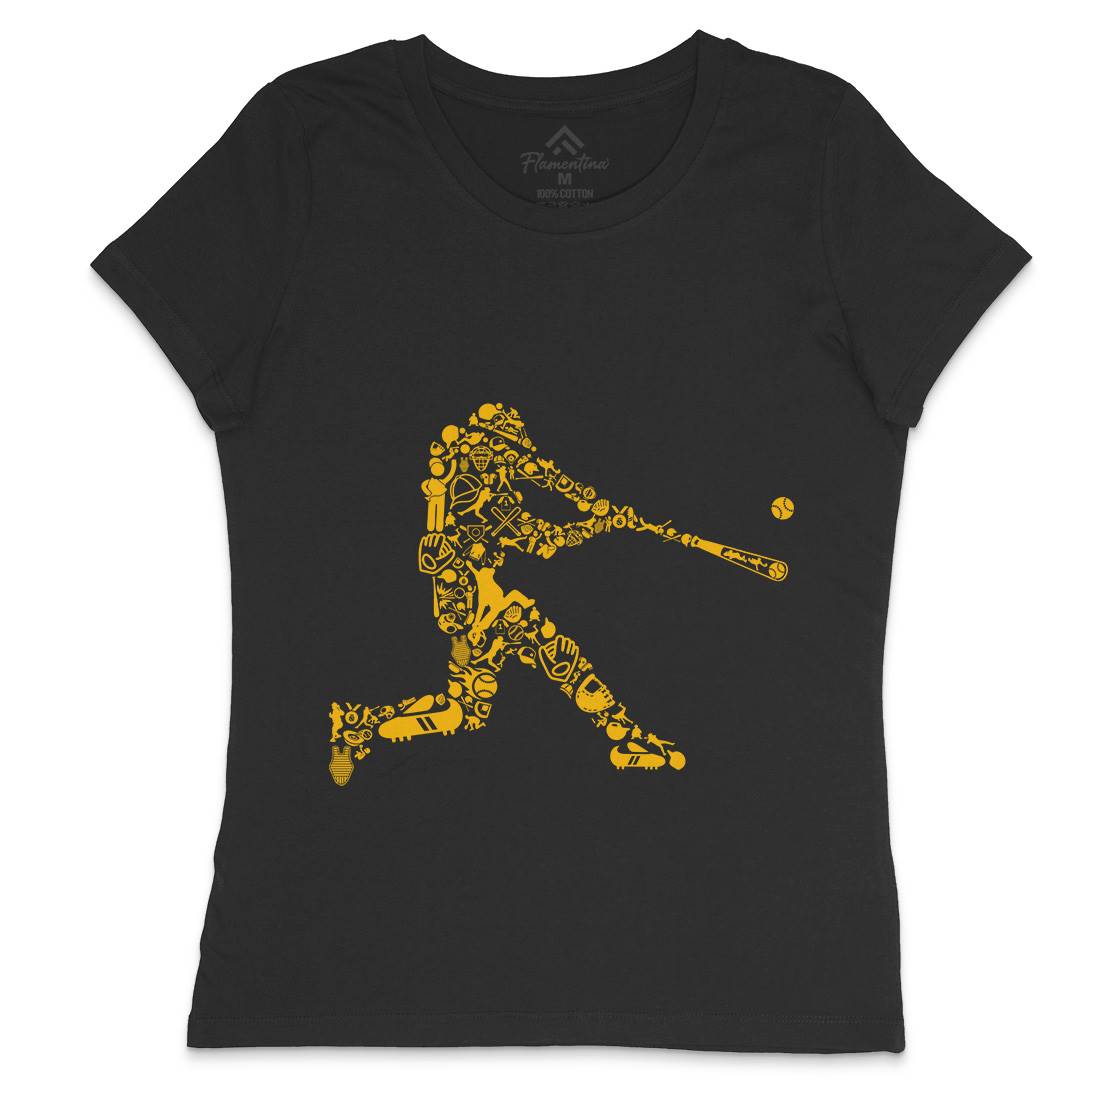 Baseball Player Womens Crew Neck T-Shirt Sport B007